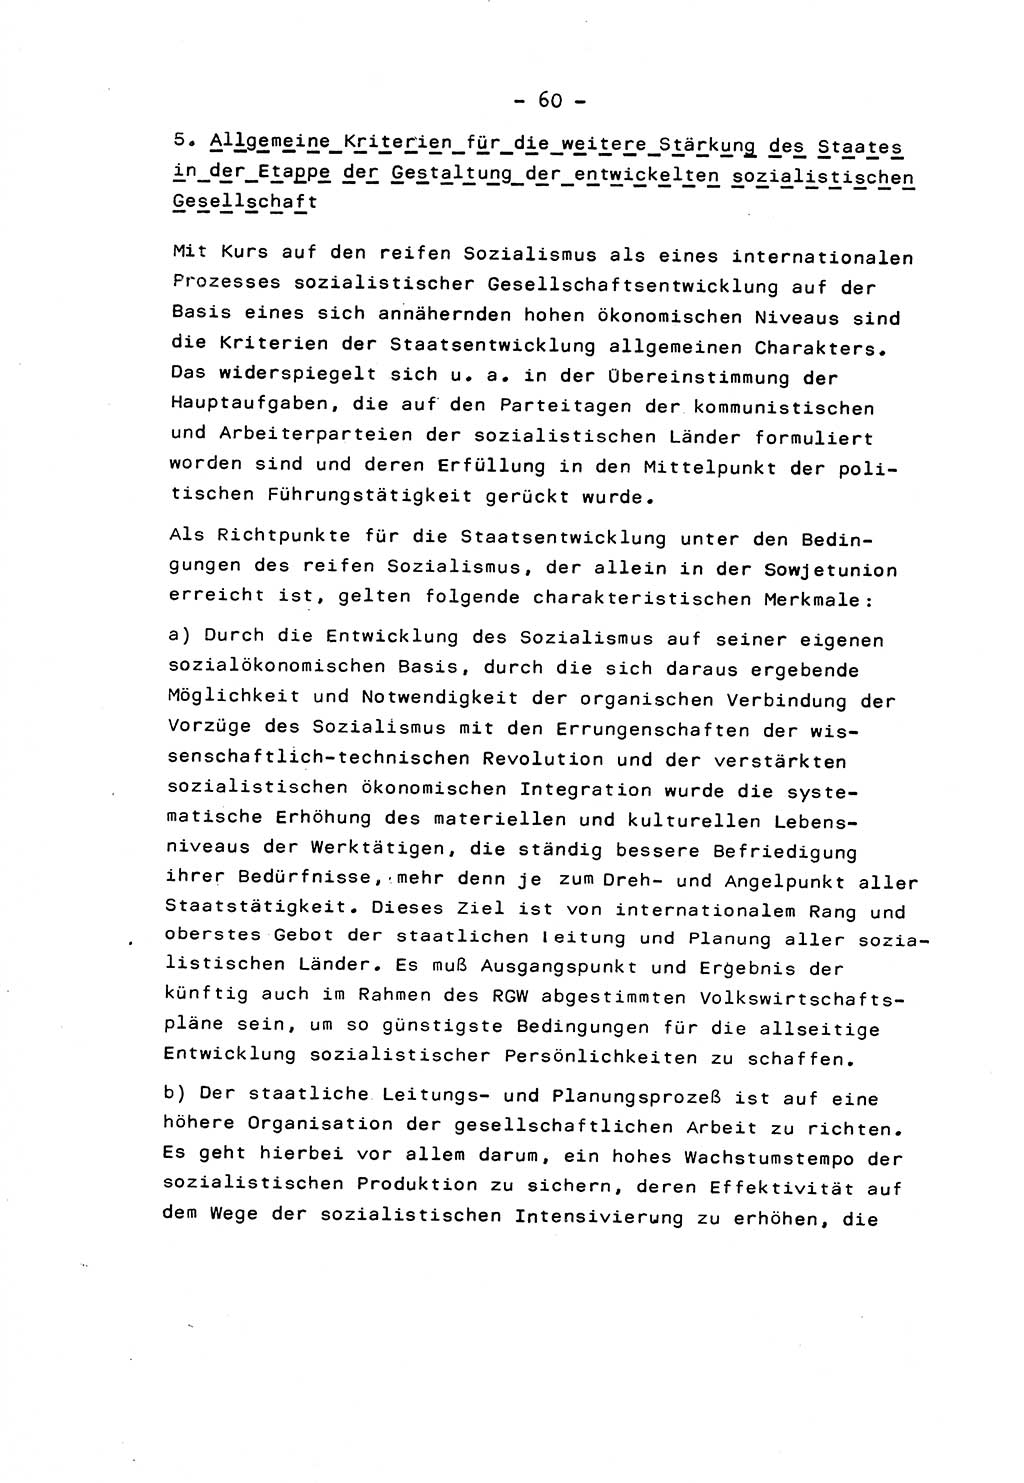 Marxistisch-leninistische Staats- und Rechtstheorie [Deutsche Demokratische Republik (DDR)] 1975, Seite 60 (ML St.-R.-Th. DDR 1975, S. 60)